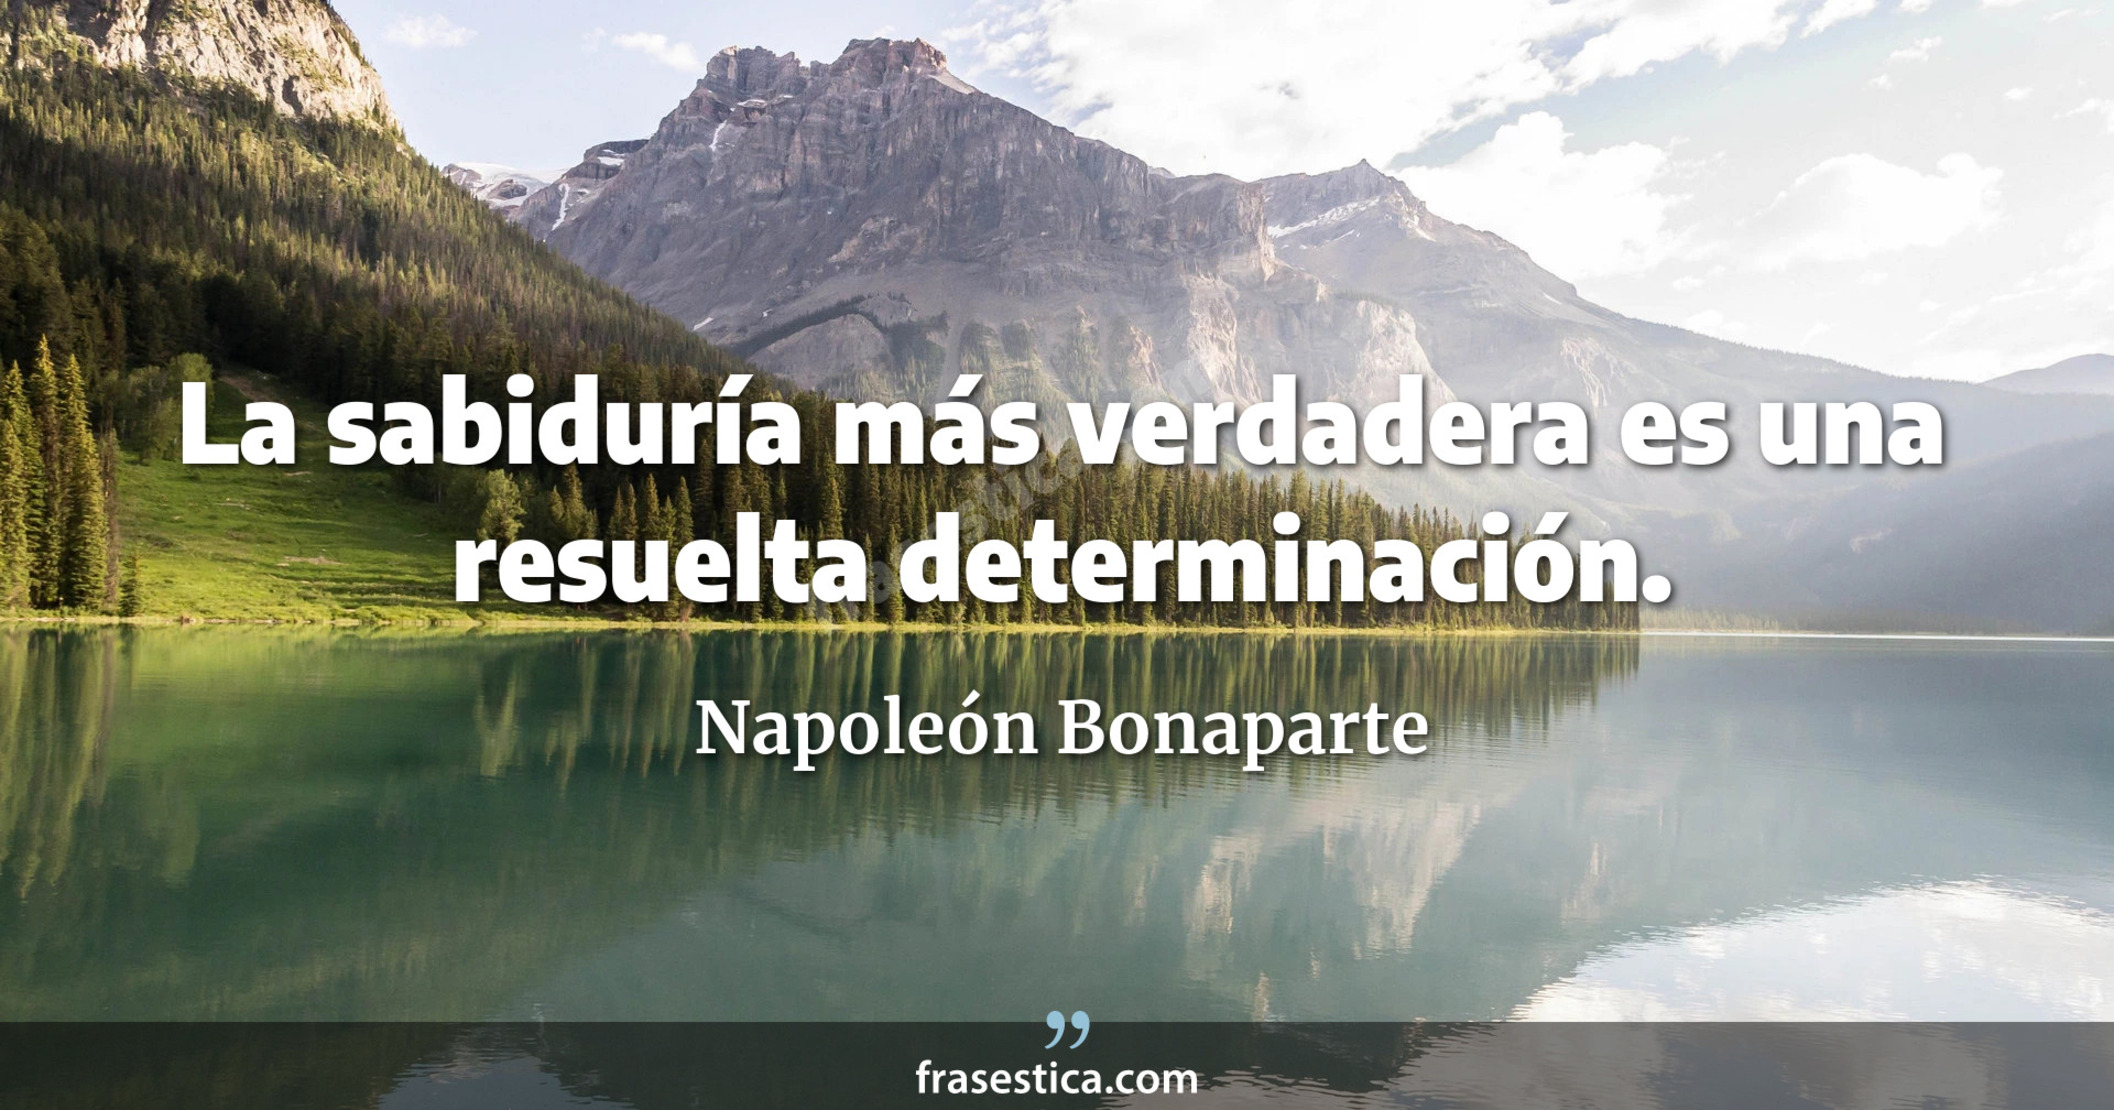 La sabiduría más verdadera es una resuelta determinación. - Napoleón Bonaparte